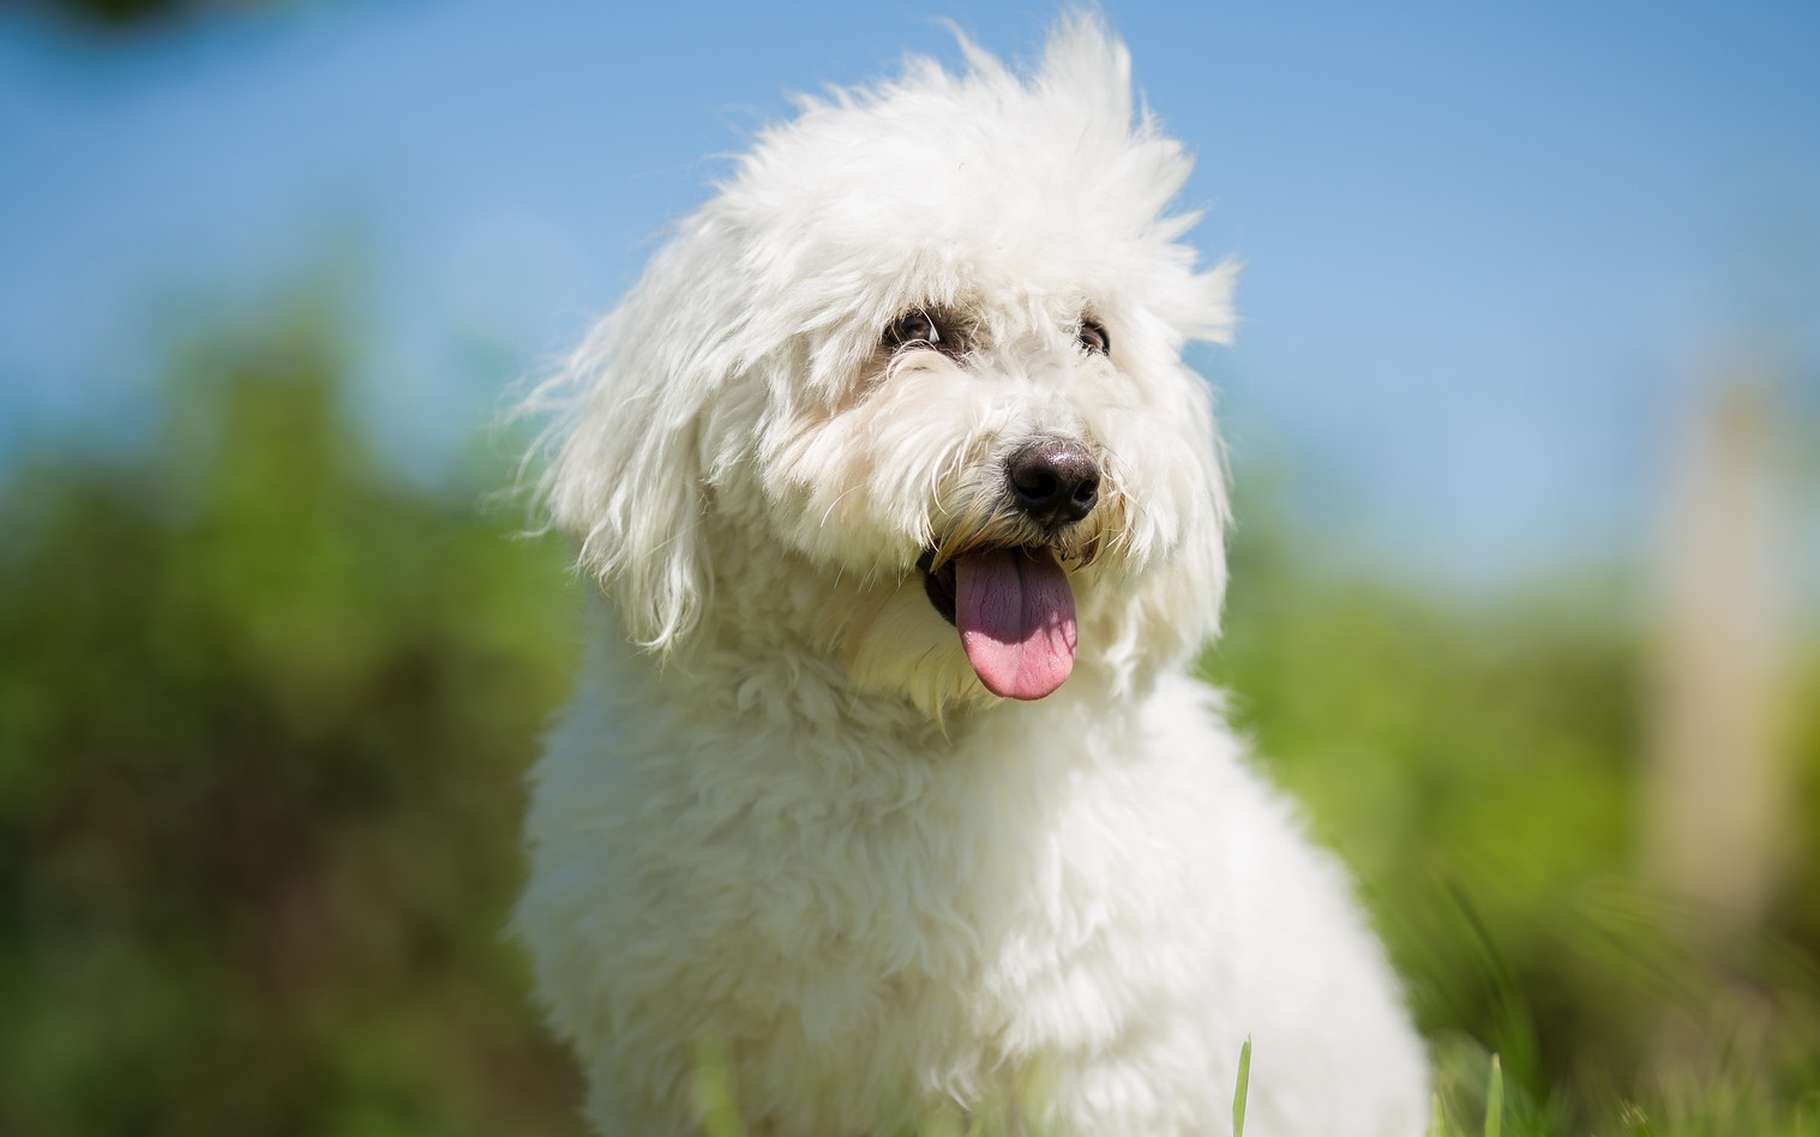 Les chiens vieillissent aussi, avec les conséquences que cela entraîne. Ici, un coton de Tuléar. © Lunja, Shutterstock